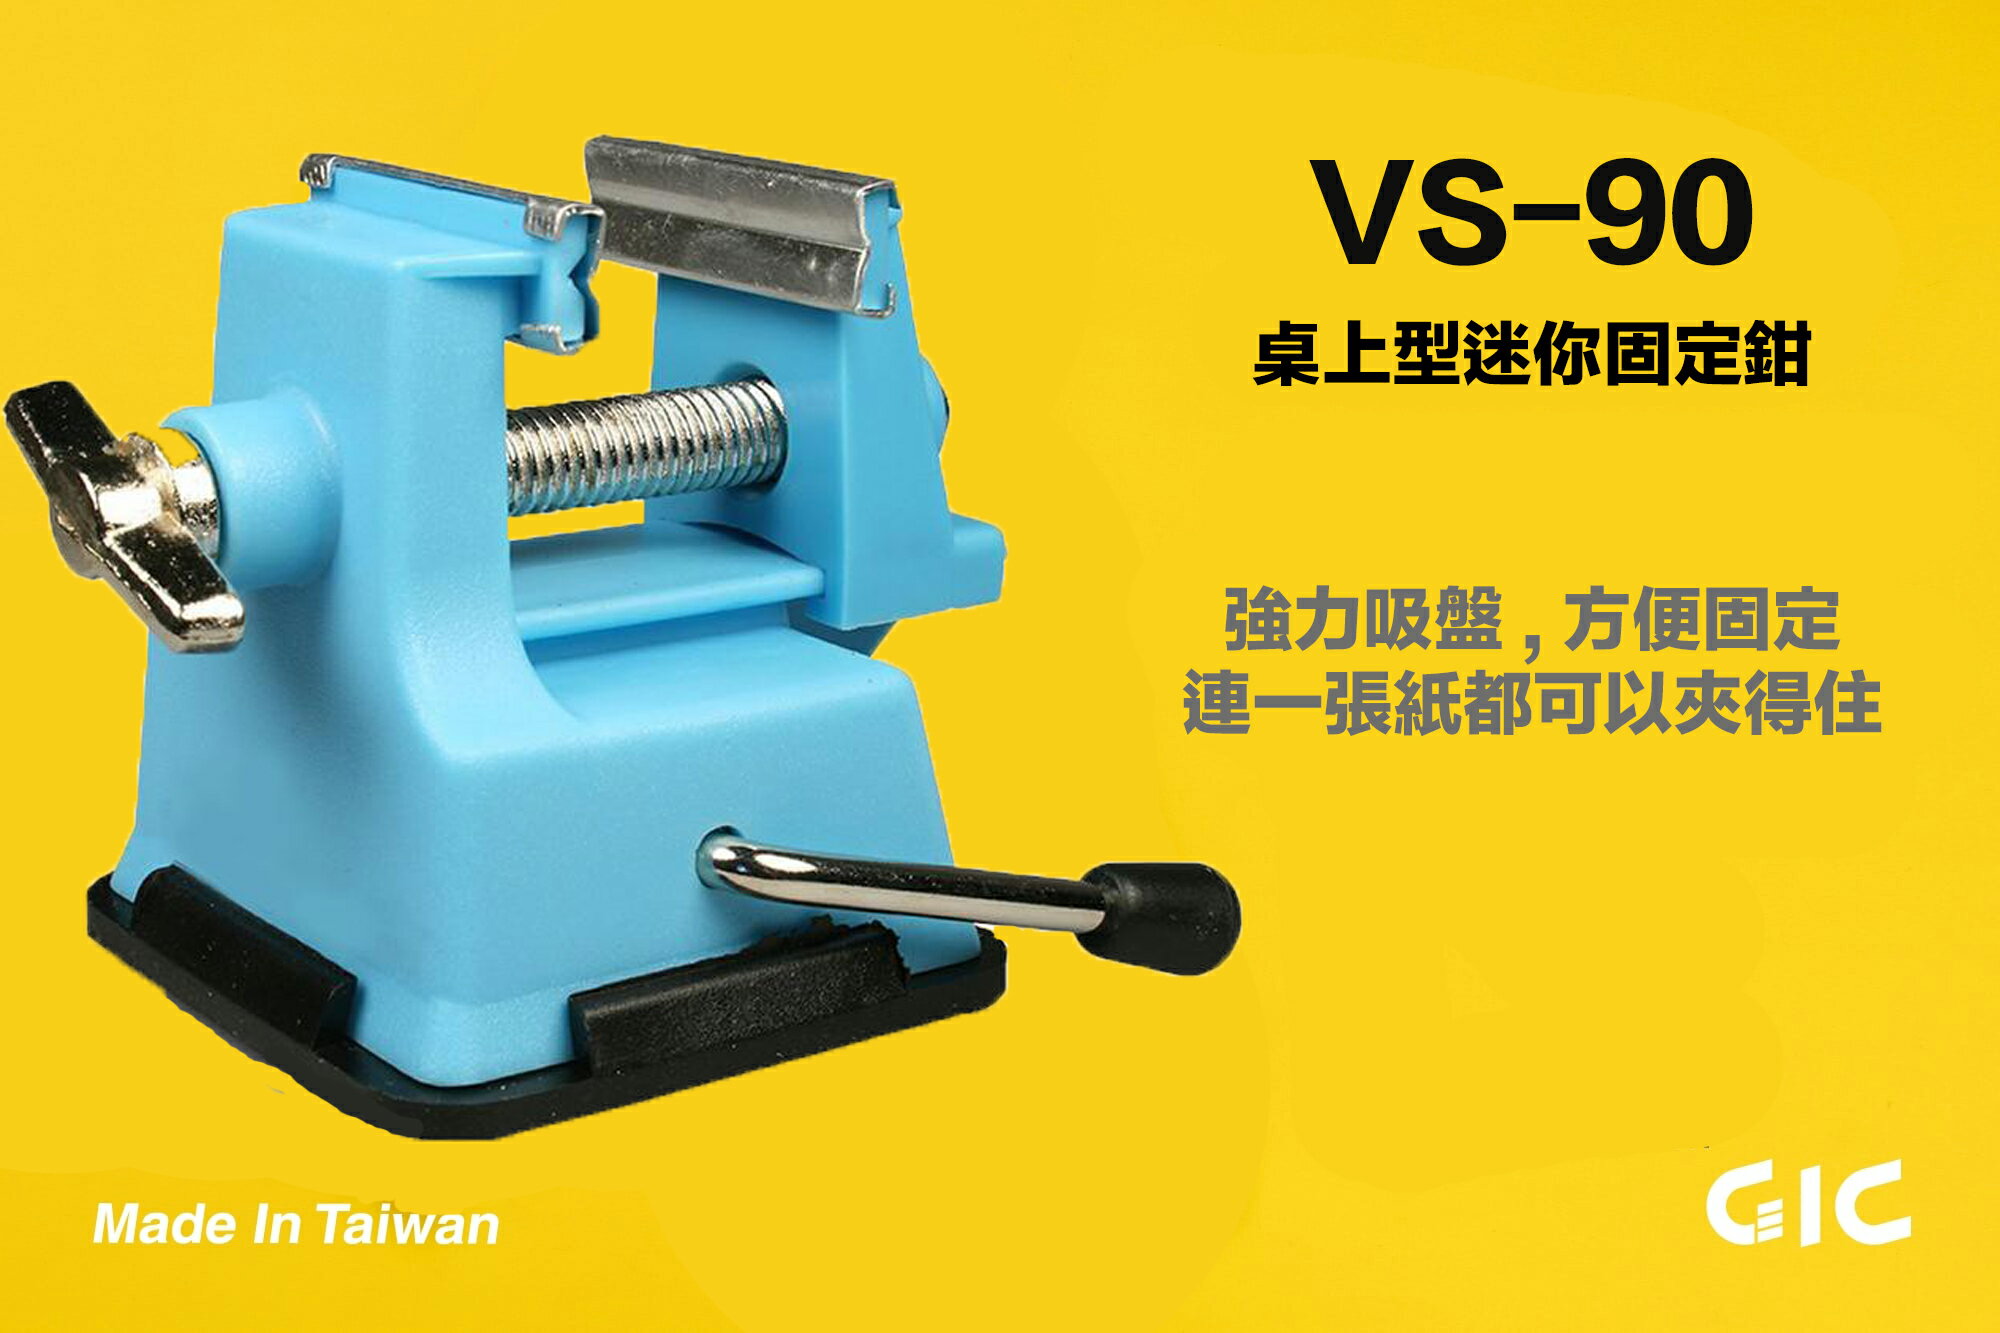 【鋼普拉】現貨 台灣製造 GIC MINI VISE VS-90 萬用固定座 模型工具 桌上型 迷你夾鉗 吸盤固定